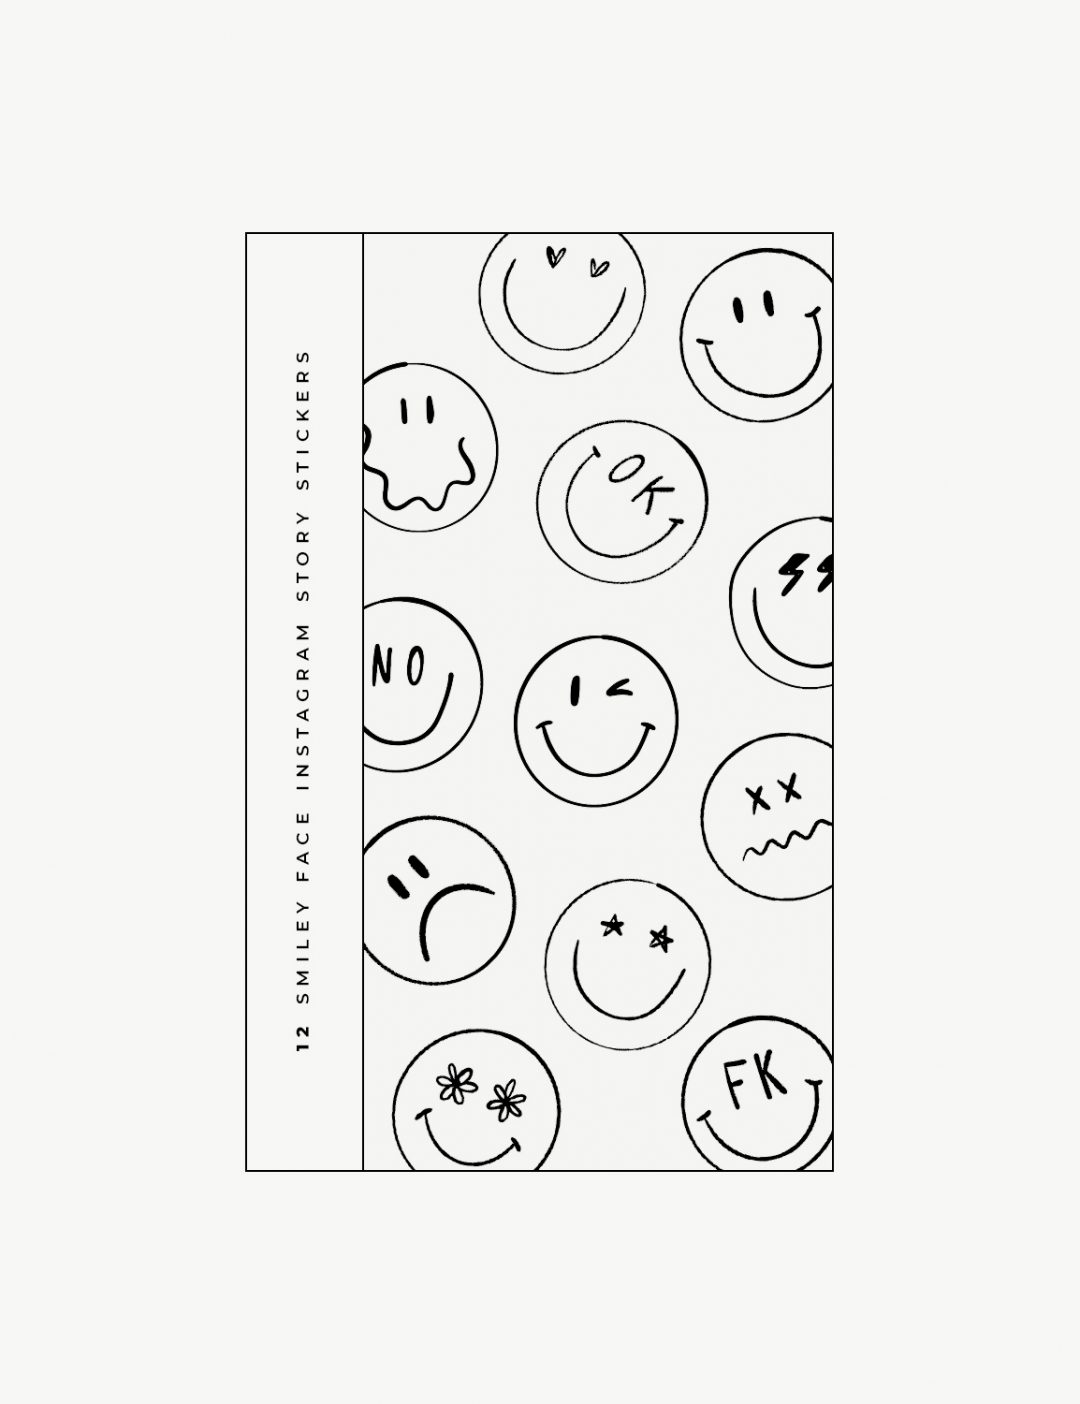 Produktbild der Smiley Face Sticker für die Instagram Story